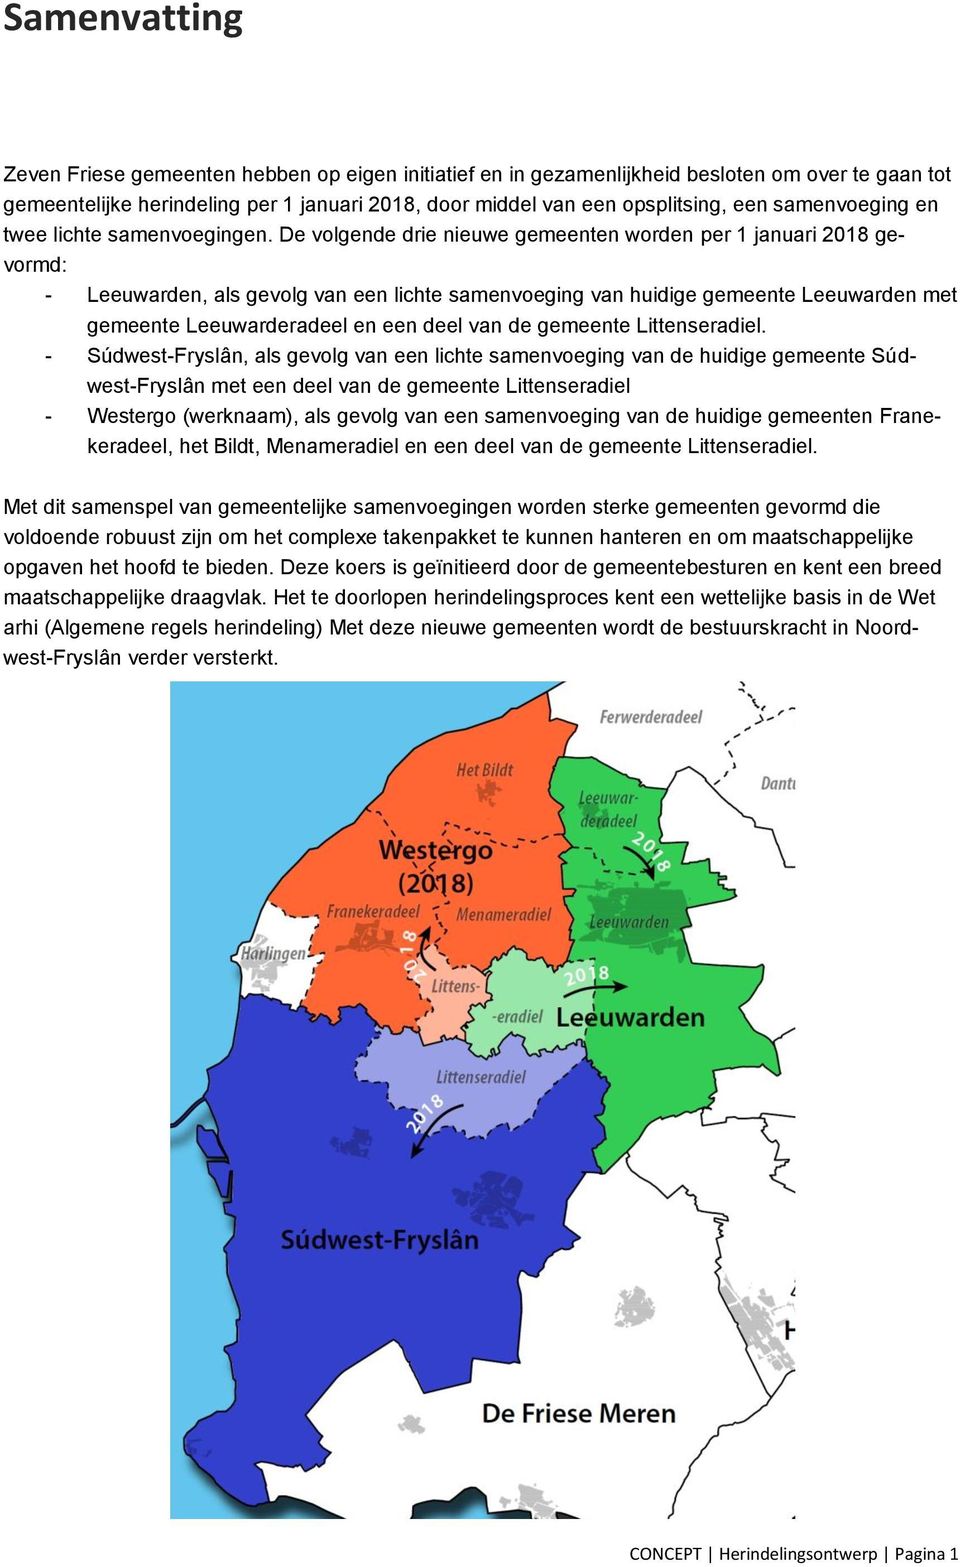 De volgende drie nieuwe gemeenten worden per 1 januari 2018 gevormd: - Leeuwarden, als gevolg van een lichte samenvoeging van huidige gemeente Leeuwarden met gemeente Leeuwarderadeel en een deel van